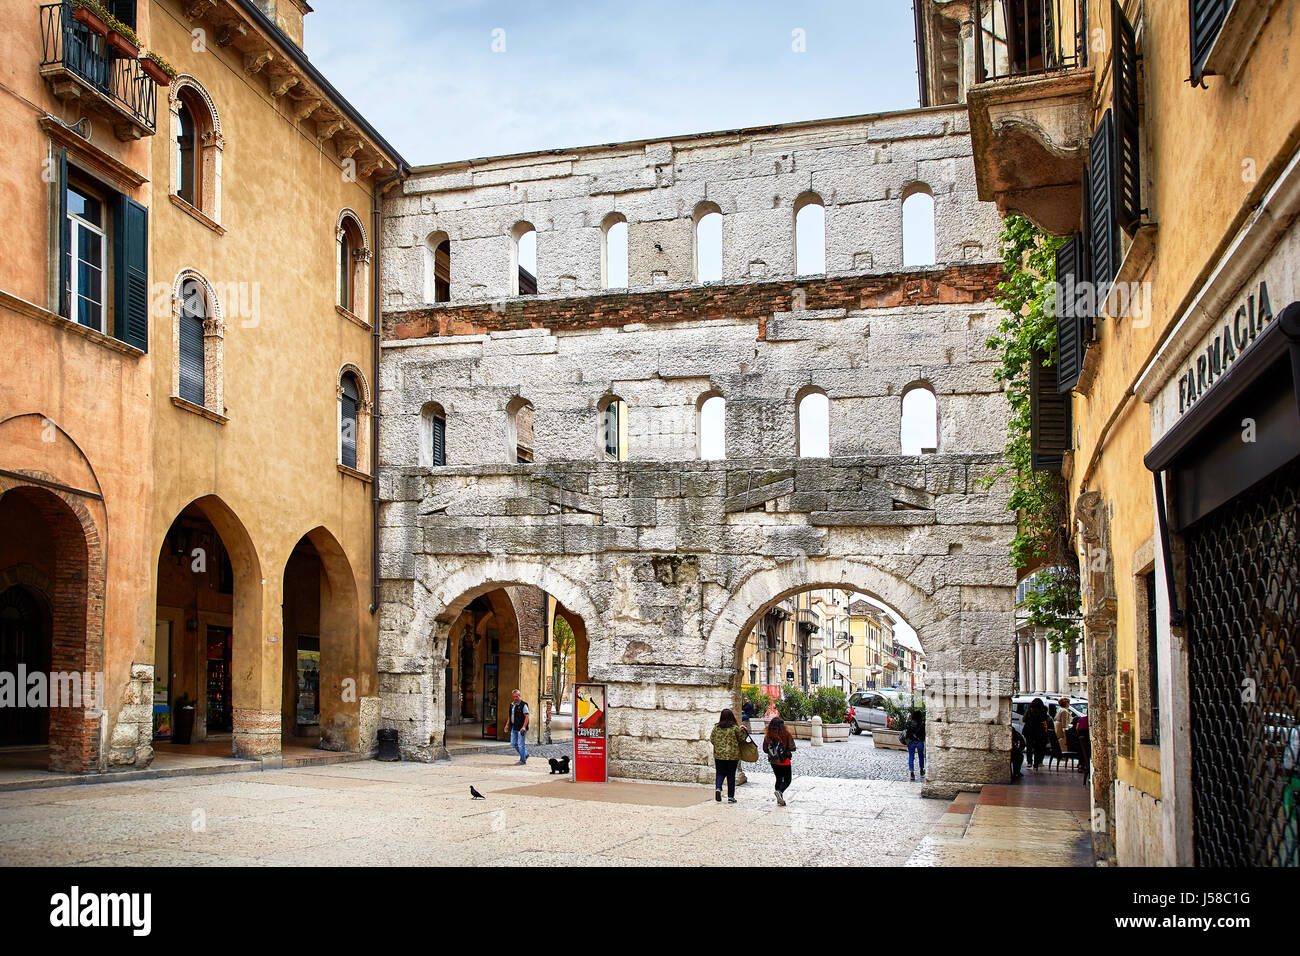 Verona, Italien - 6. Mai 2017: Antike römische Porta Borsari Tor in Verona, Italien Stockfoto